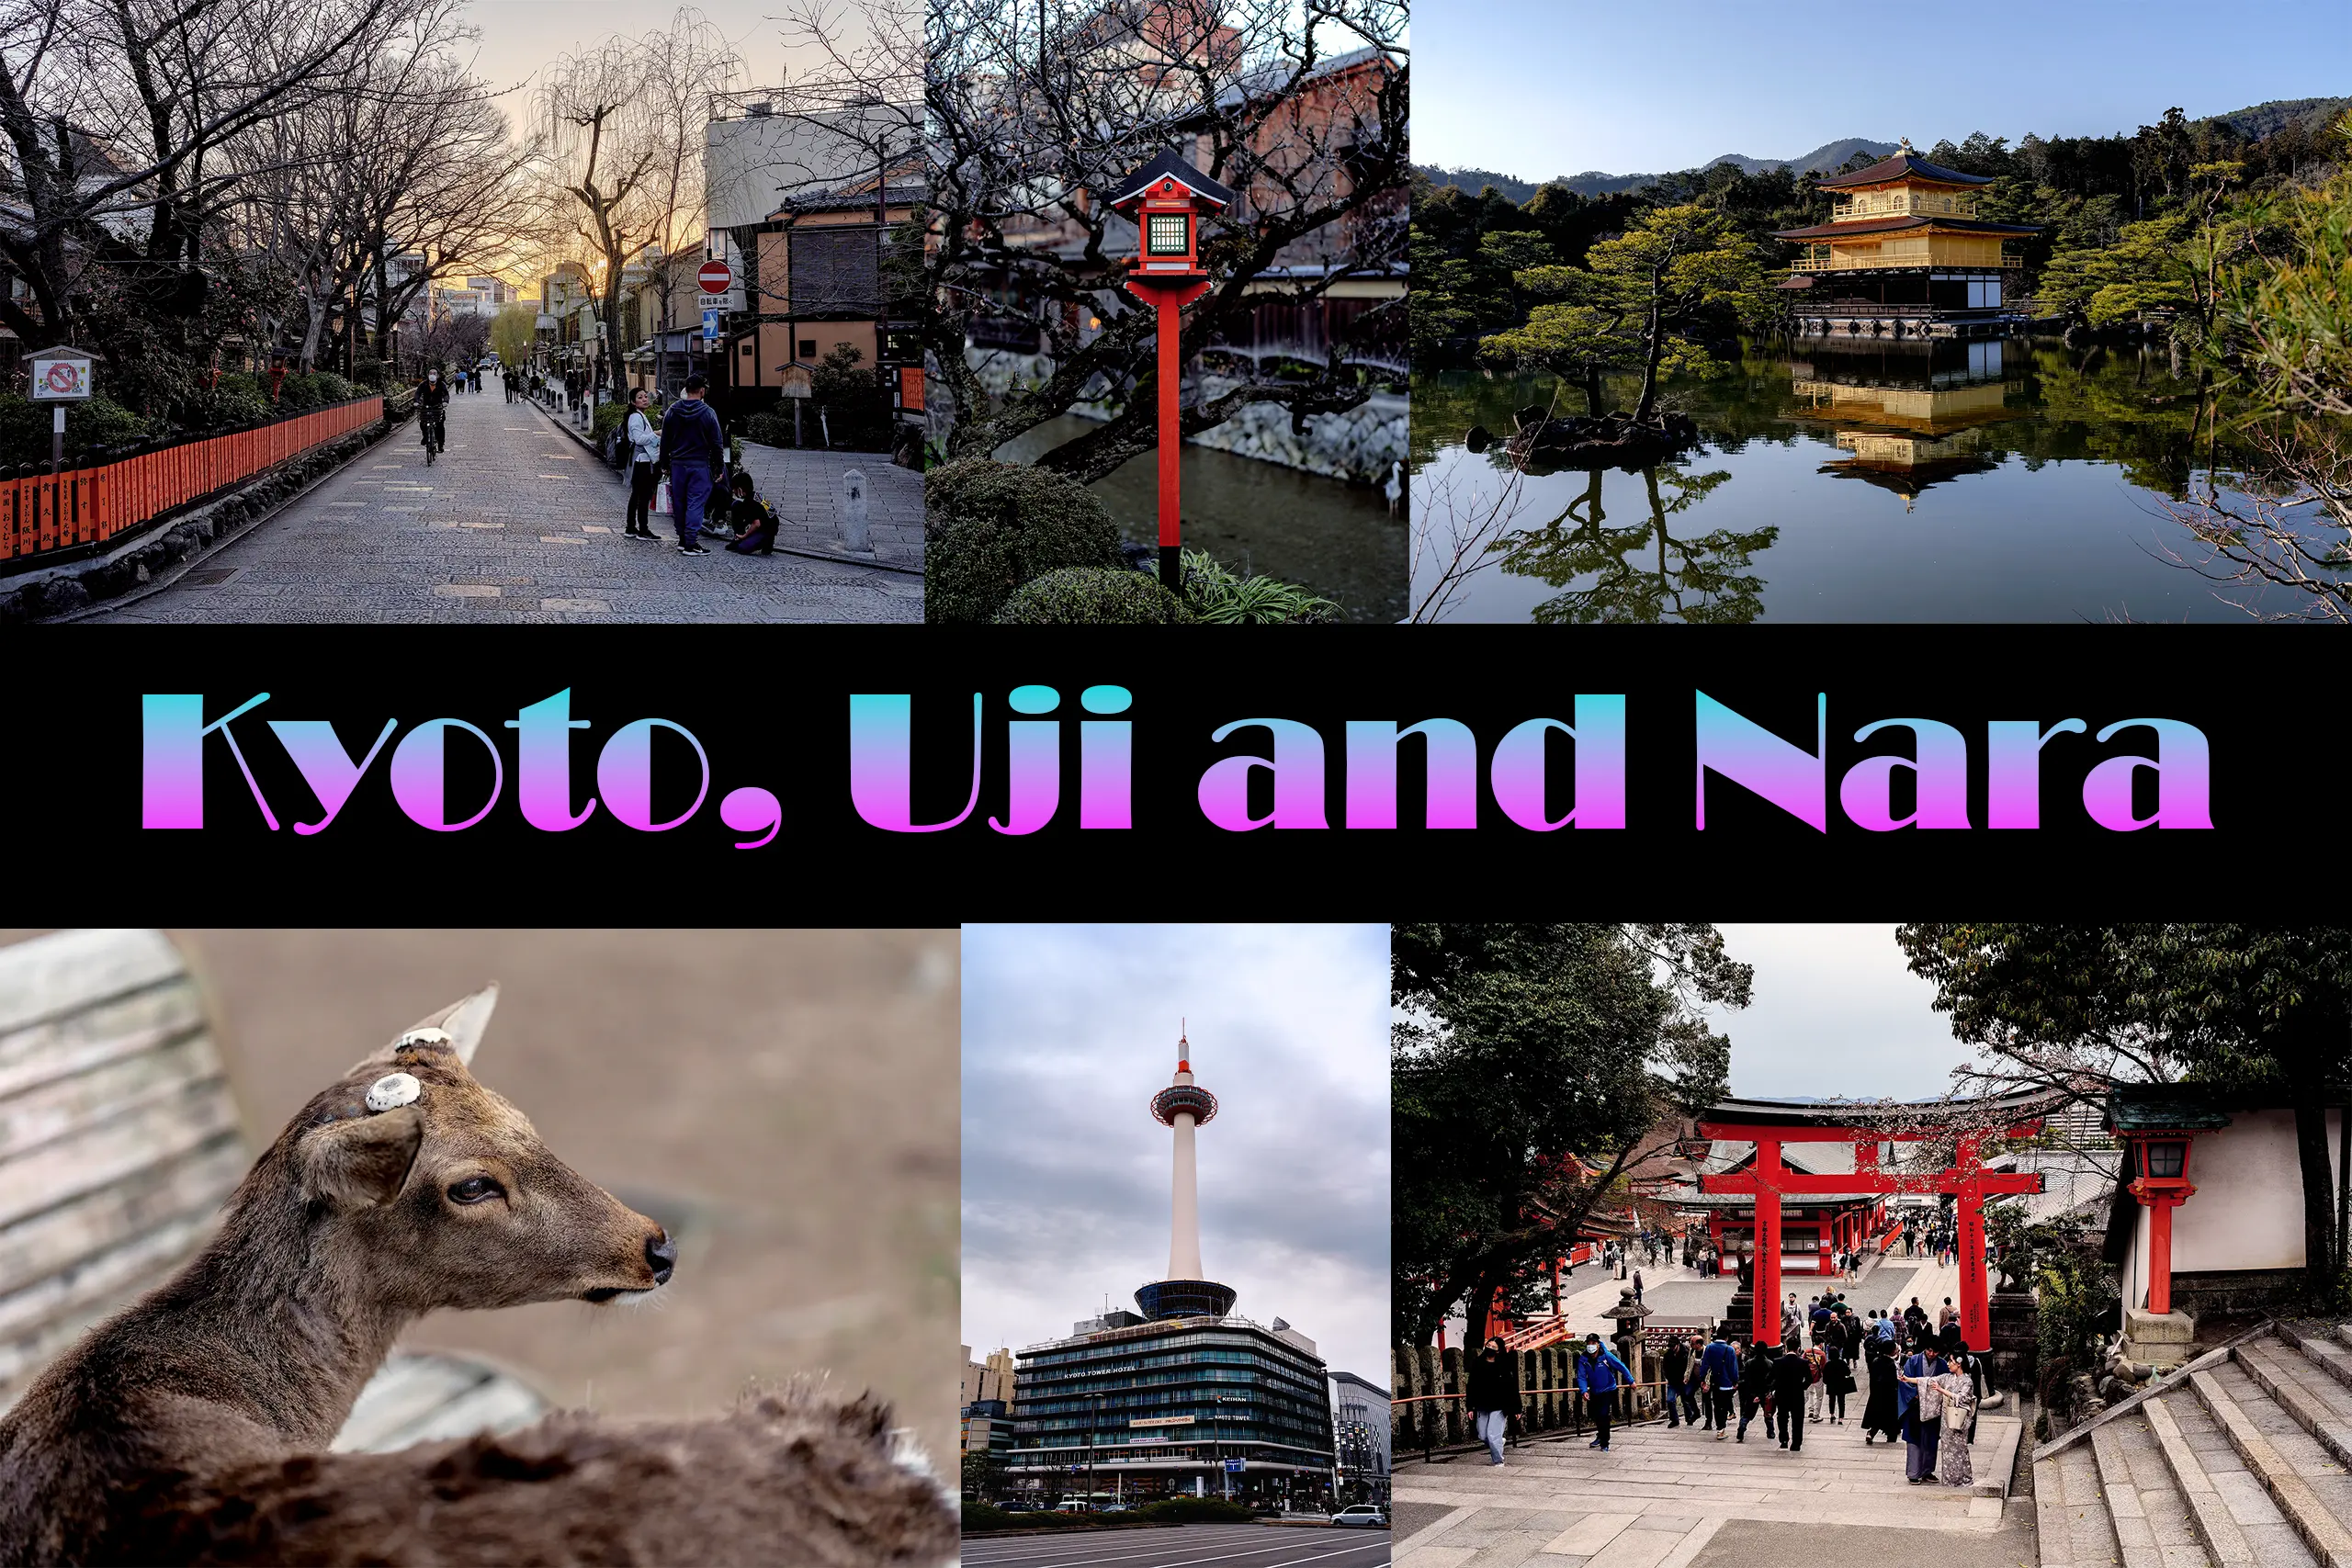 Kyoto, Uji and Nara